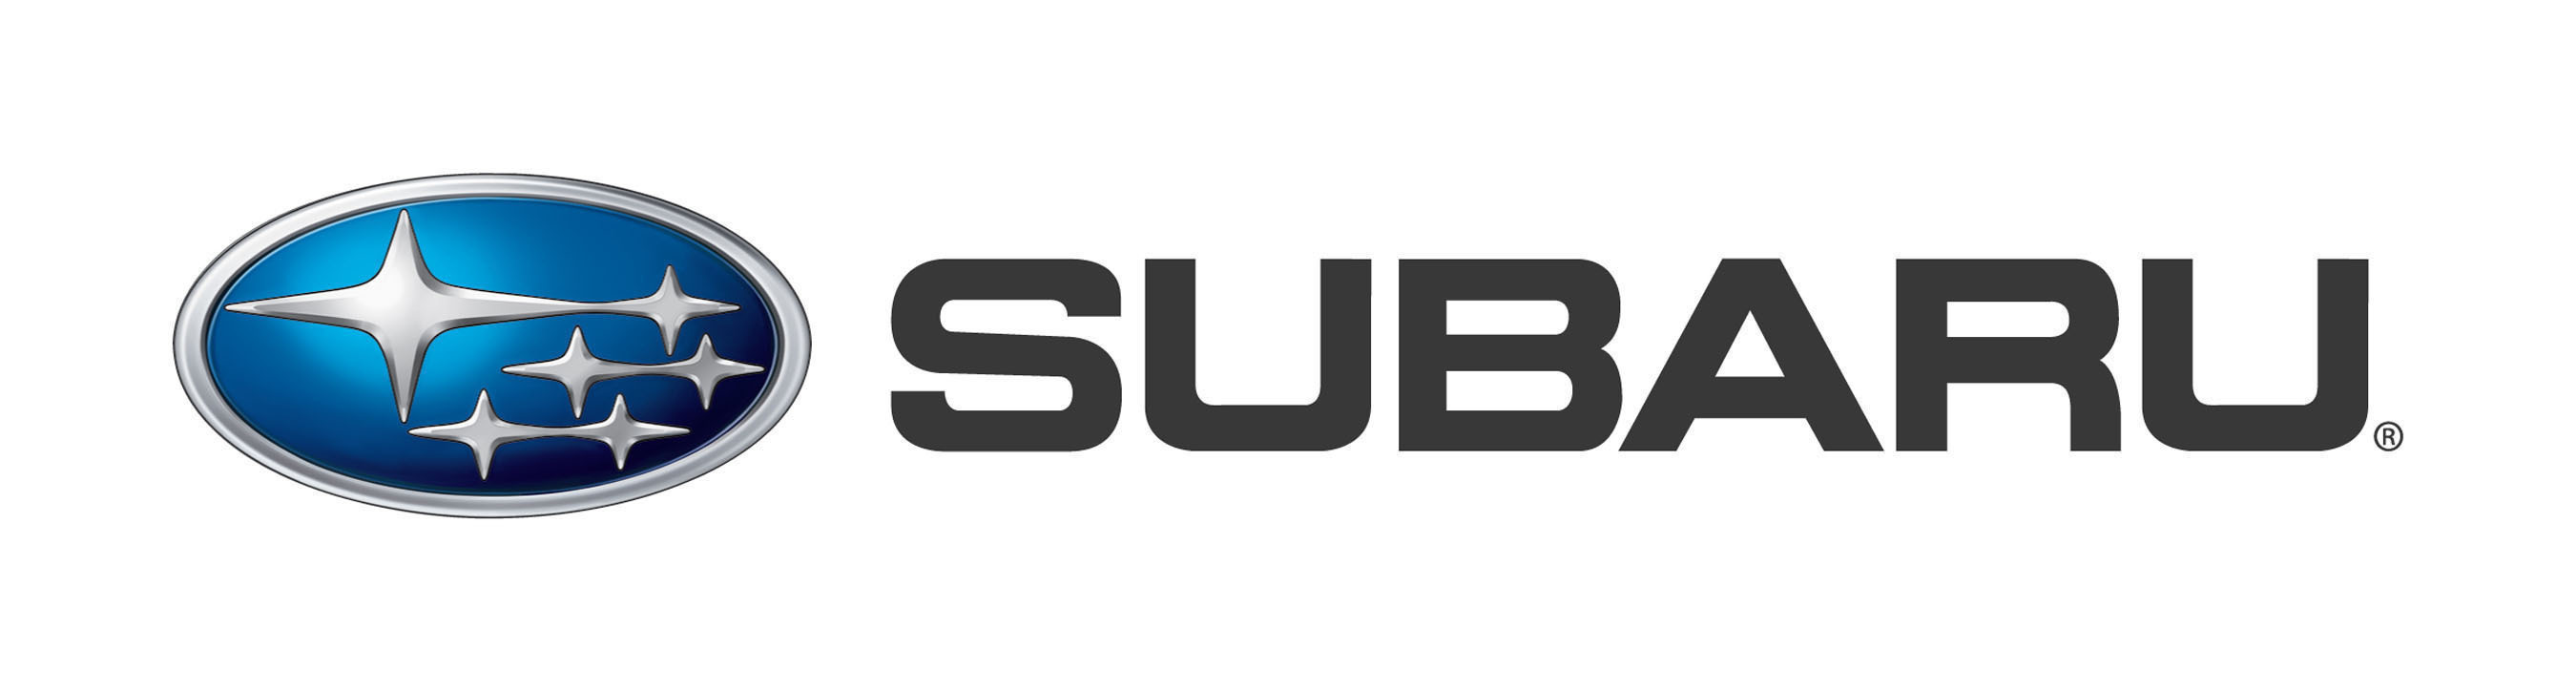 Купить моторное масло Subaru в Минске